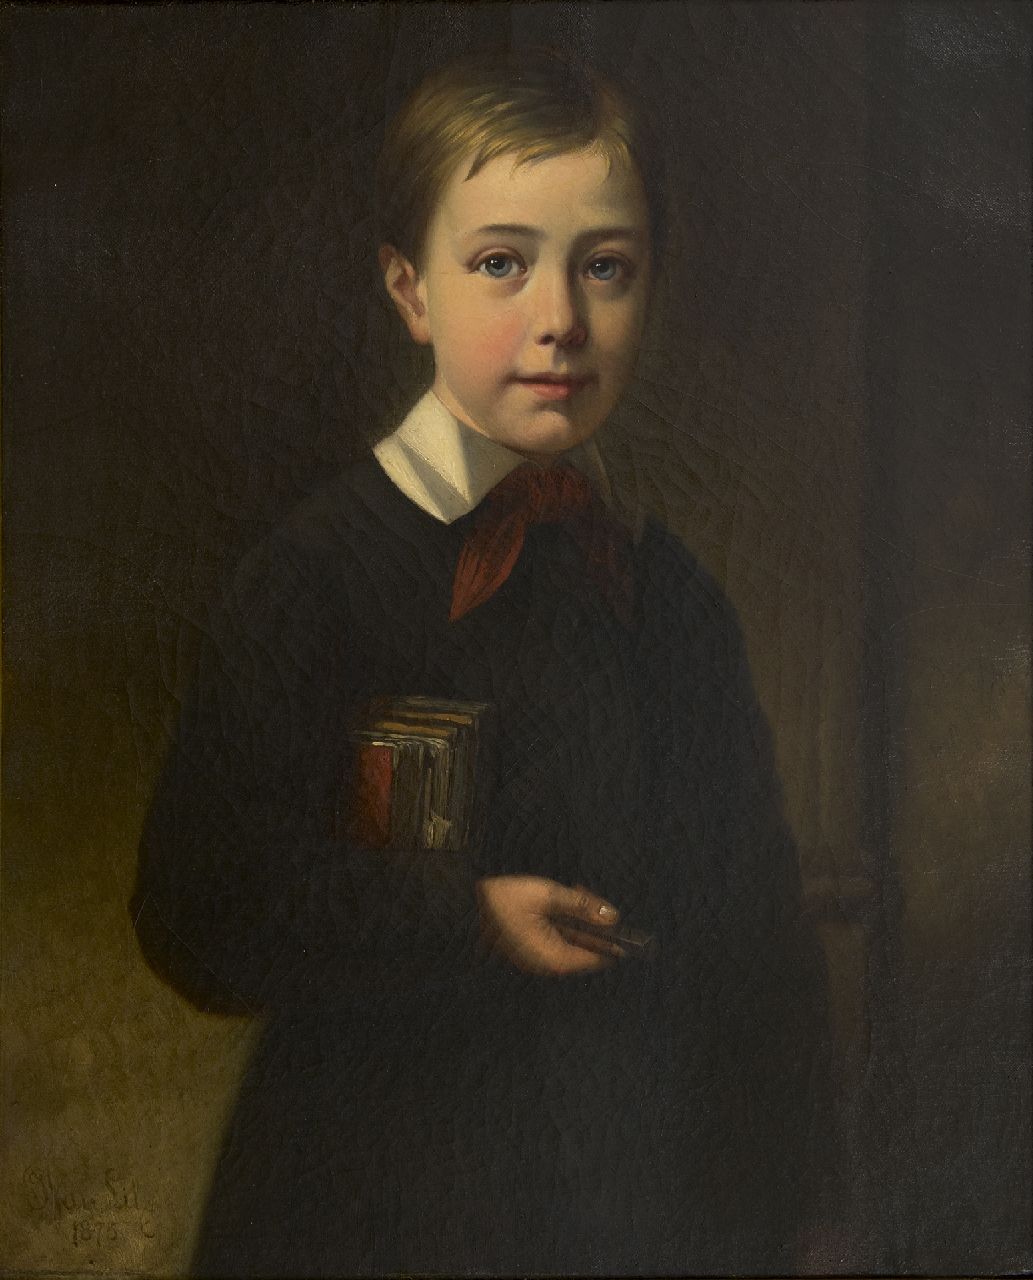 Lil J. van | Joseph van Lil | Schilderijen te koop aangeboden | Portret van Georges, zoon van de kunstenaar, olieverf op doek 63,3 x 51,5 cm, gesigneerd linksonder en gedateerd 1875